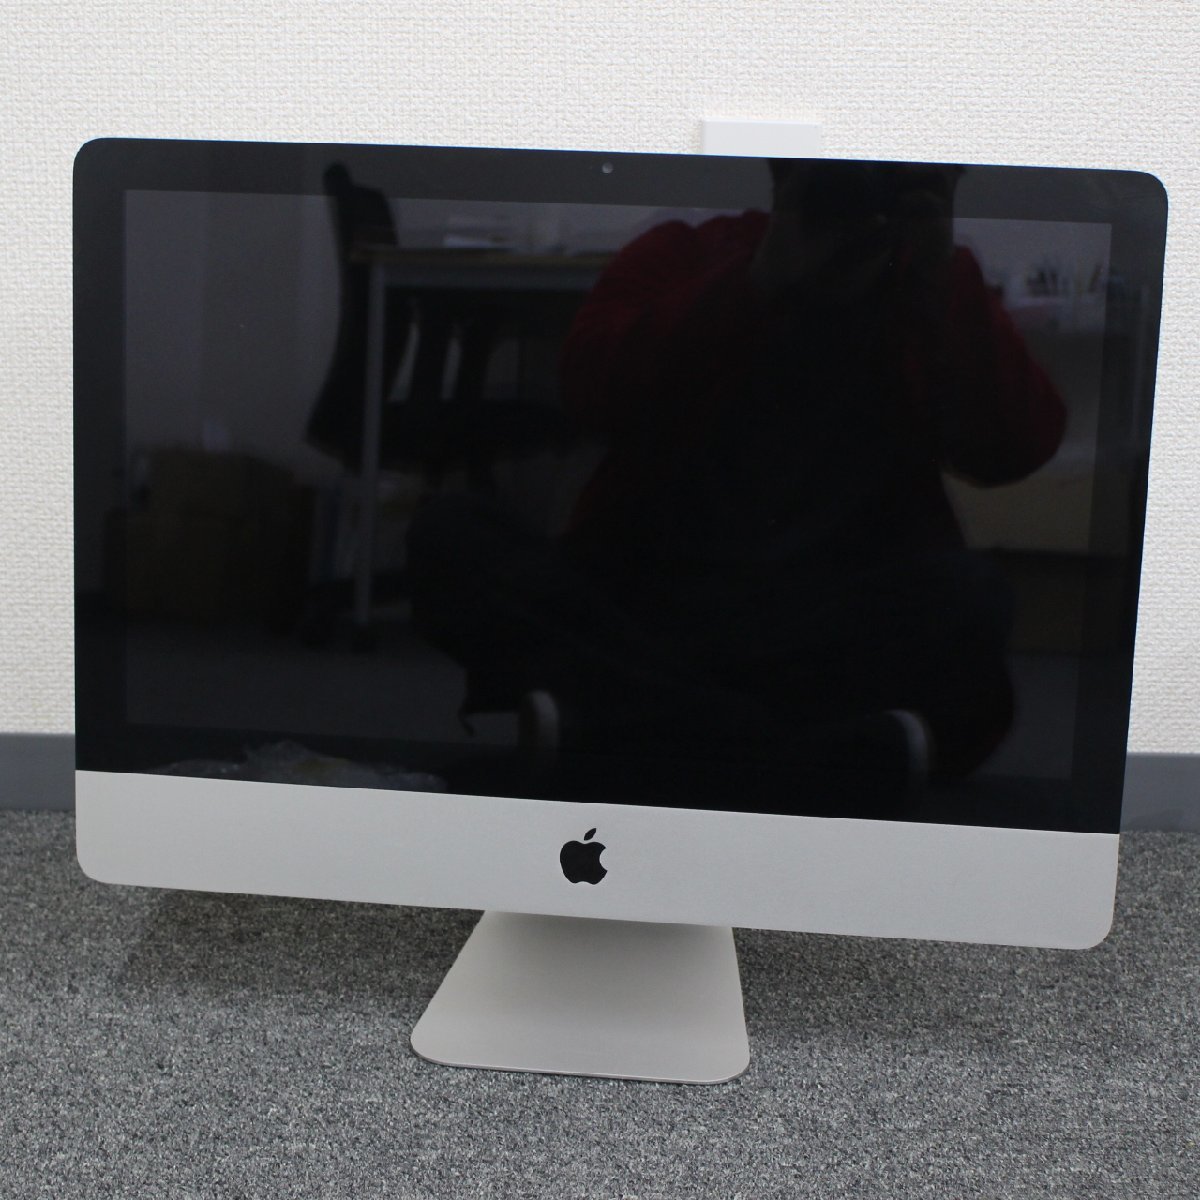 東京都杉並区にて アップル TFTディスプレイ PC Apple iMac A1311 2011年製 を出張買取させて頂きました。